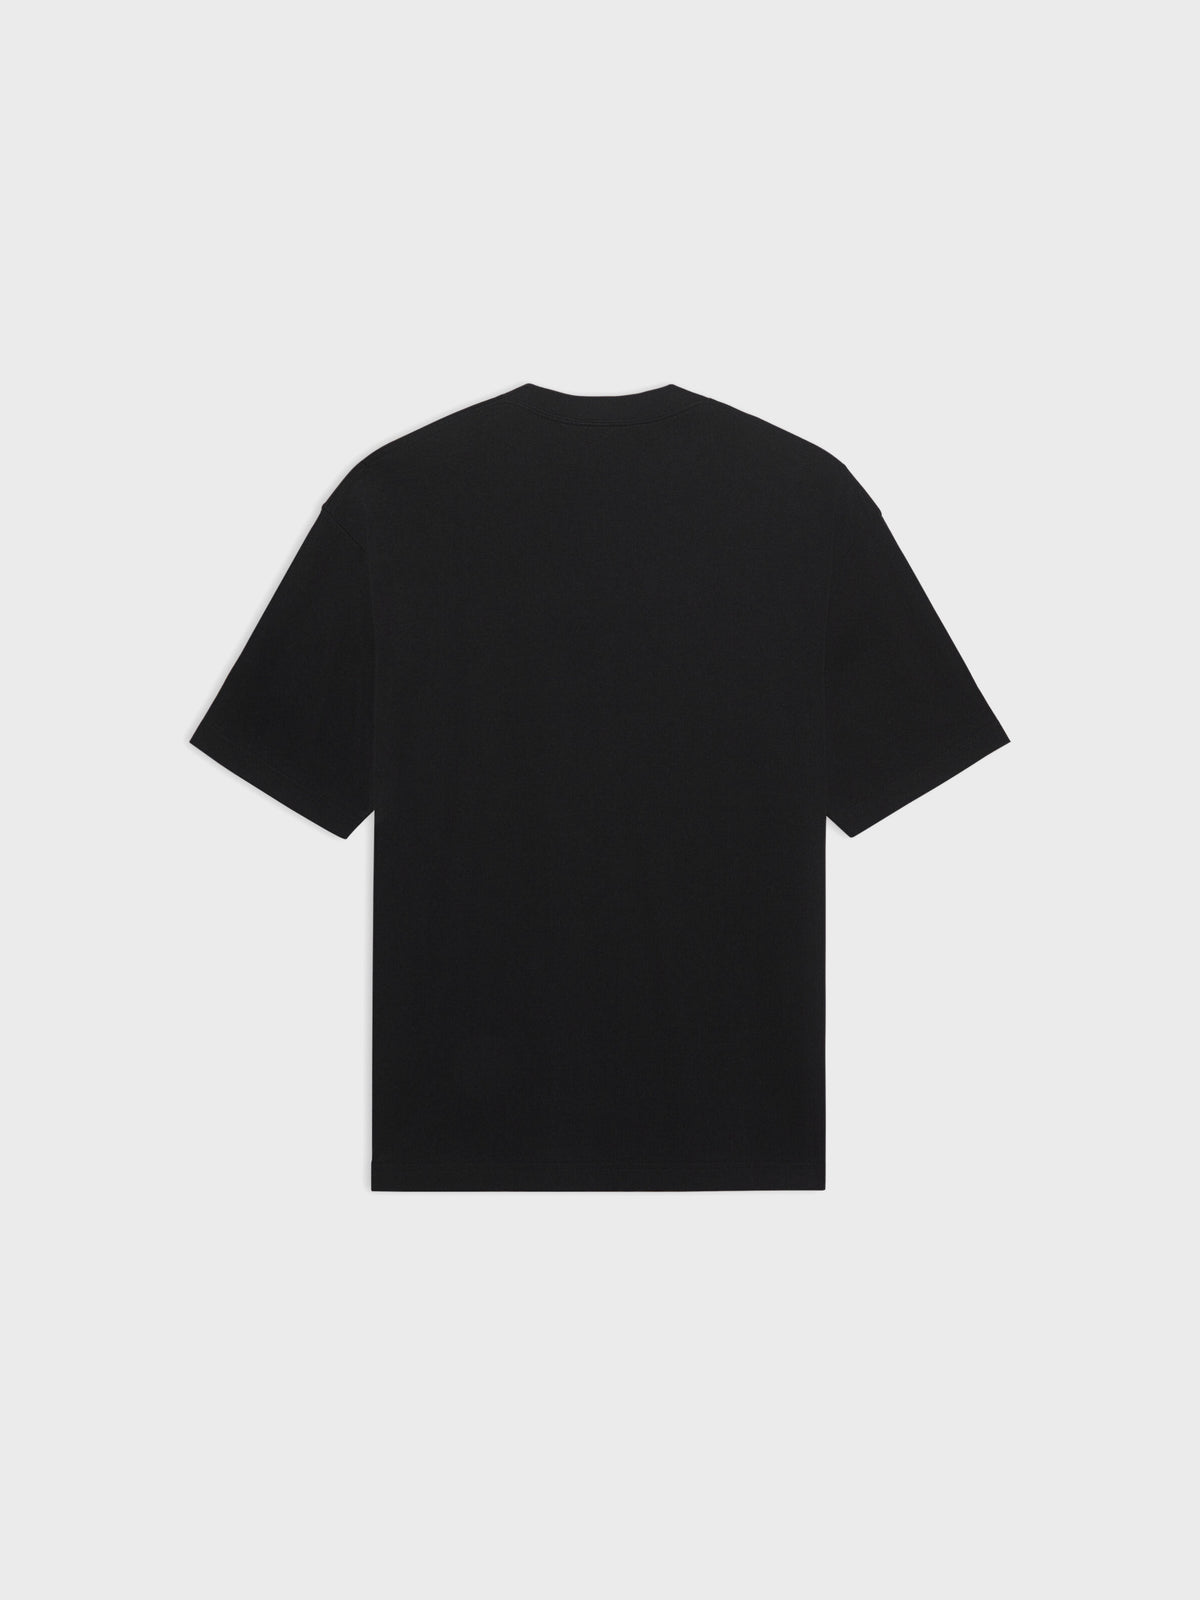 Contemporary Black T-Shirt